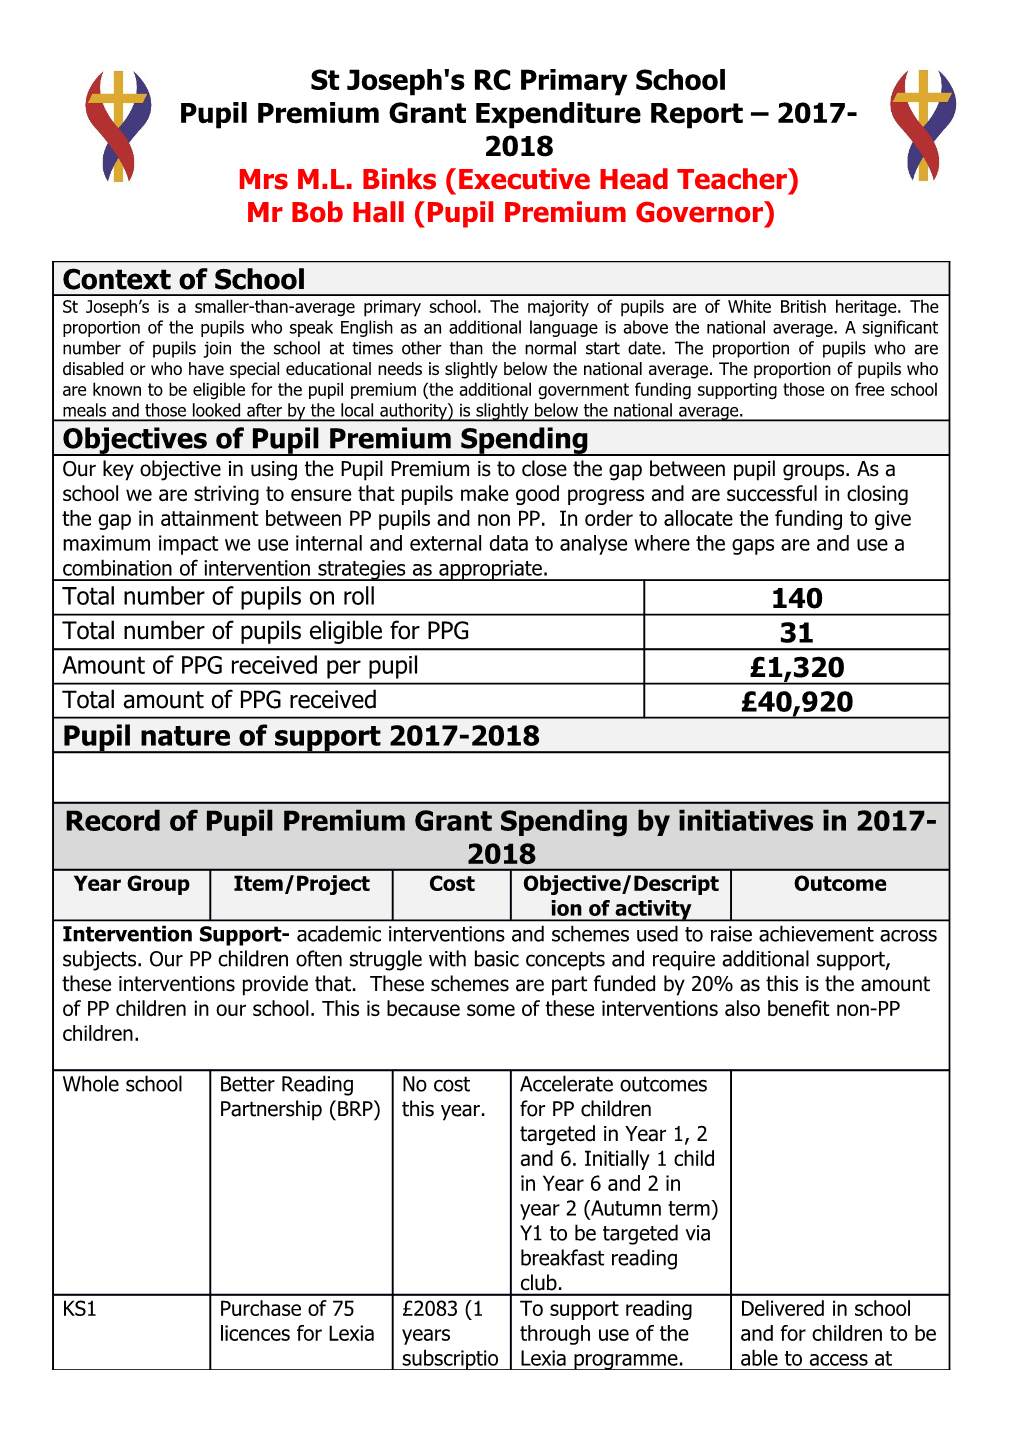 Pupil Premium Grant Expenditure Report 2017-2018